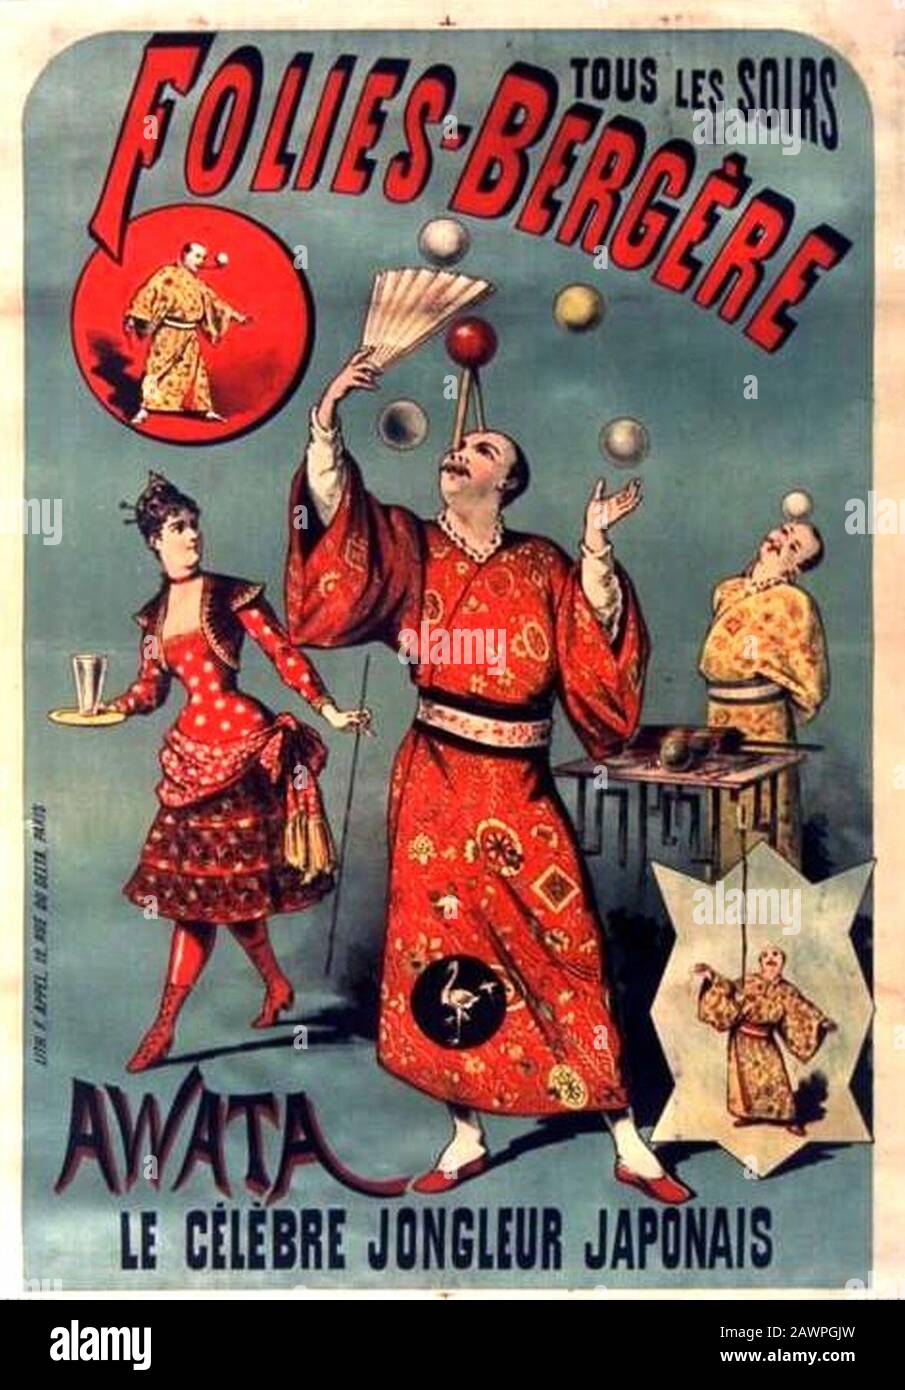 Folies-Bergère. Tous les soirs Awata, le célèbre jongleur japonais 1895. Foto de stock